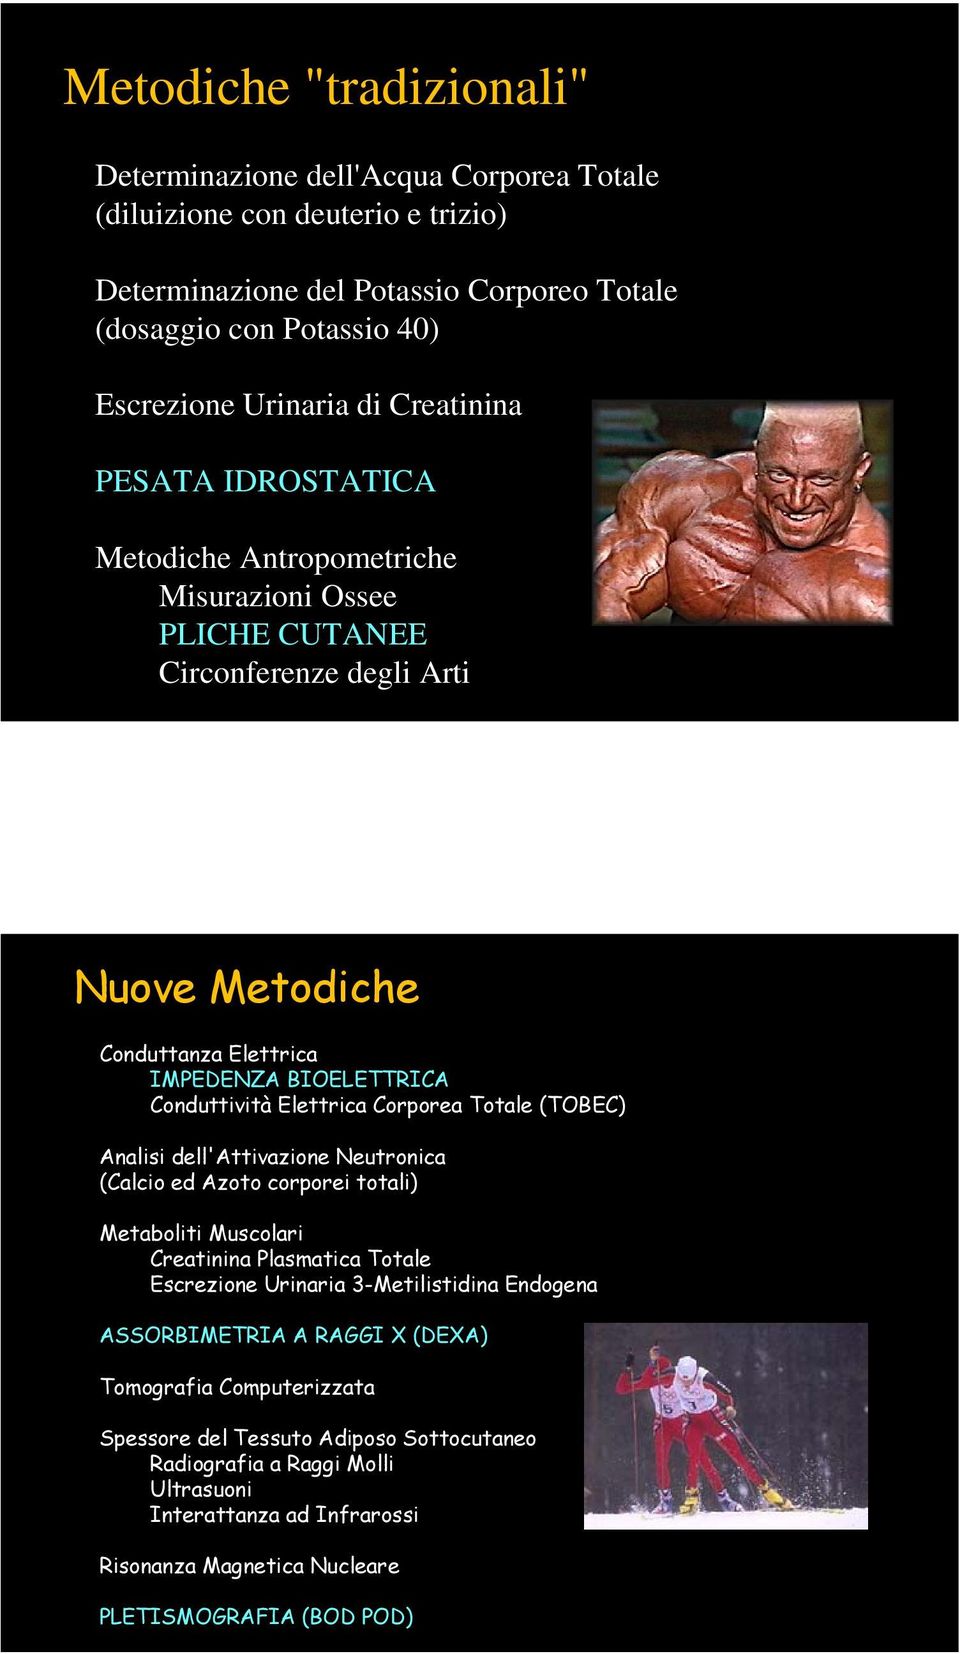 Corporea Totale (TOBEC) Analisi dell'attivazione Neutronica (Calcio ed Azoto corporei totali) Metaboliti Muscolari Creatinina Plasmatica Totale Escrezione Urinaria 3-Metilistidina Endogena